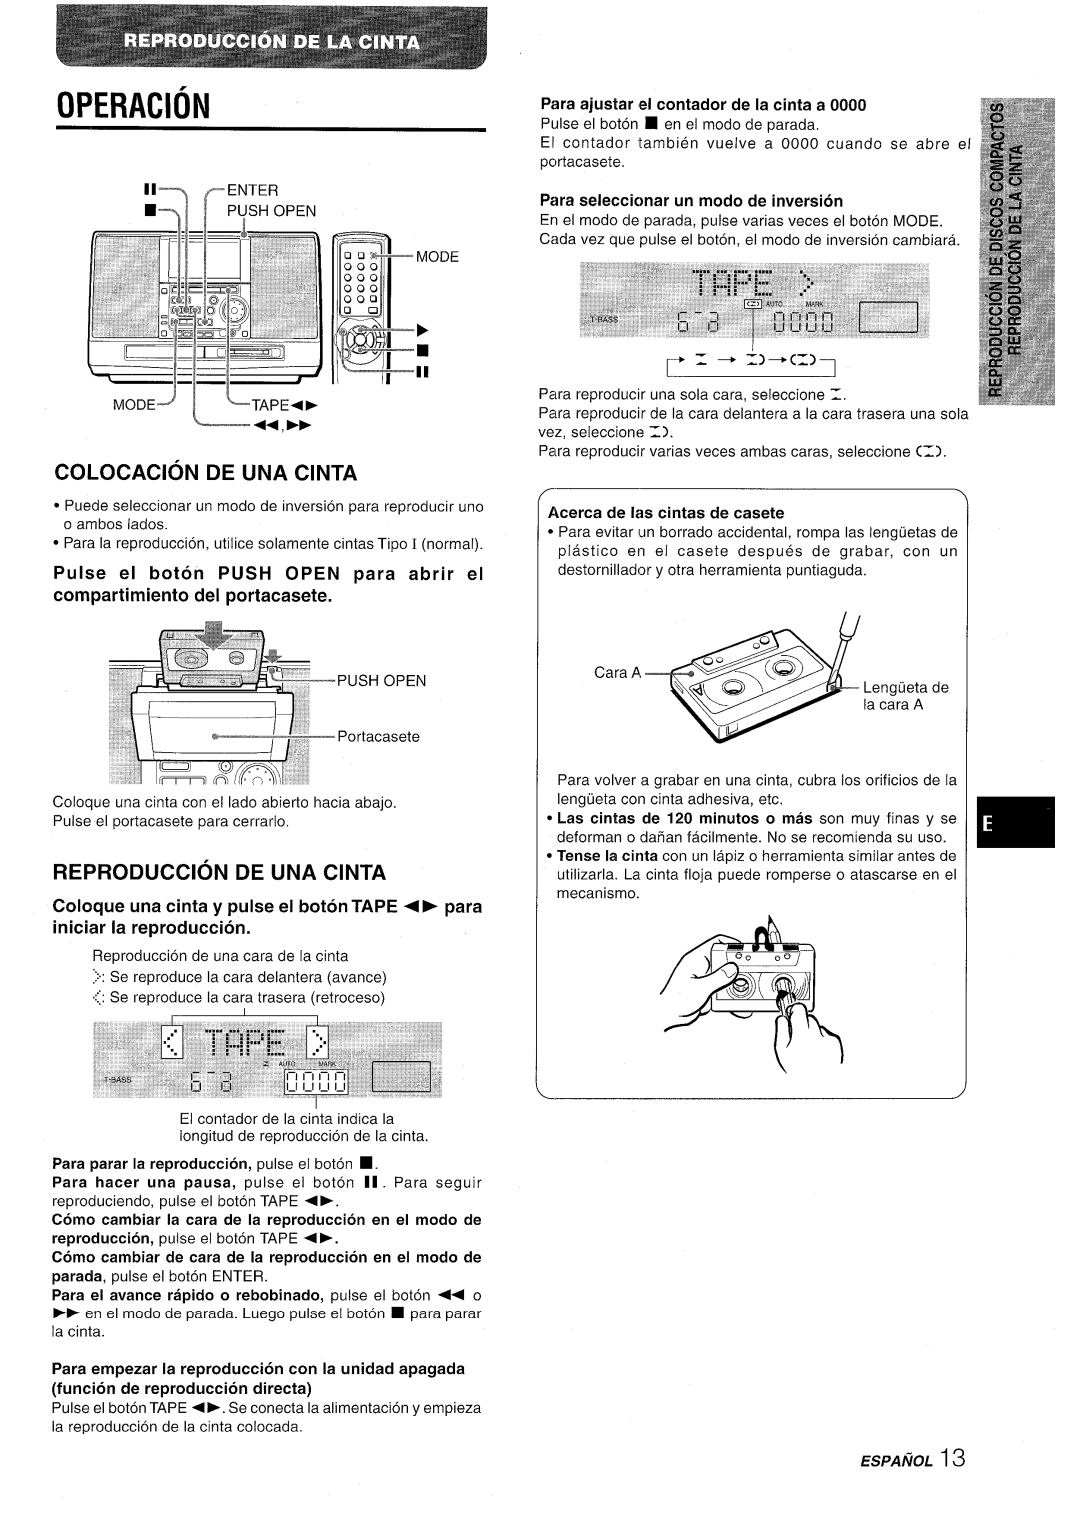 Aiwa CSD-MD50 manual Colocacion De Una Cinta, Reproduction De Una Cinta, Operacion, Para ajustar e! contador de la cinta a 